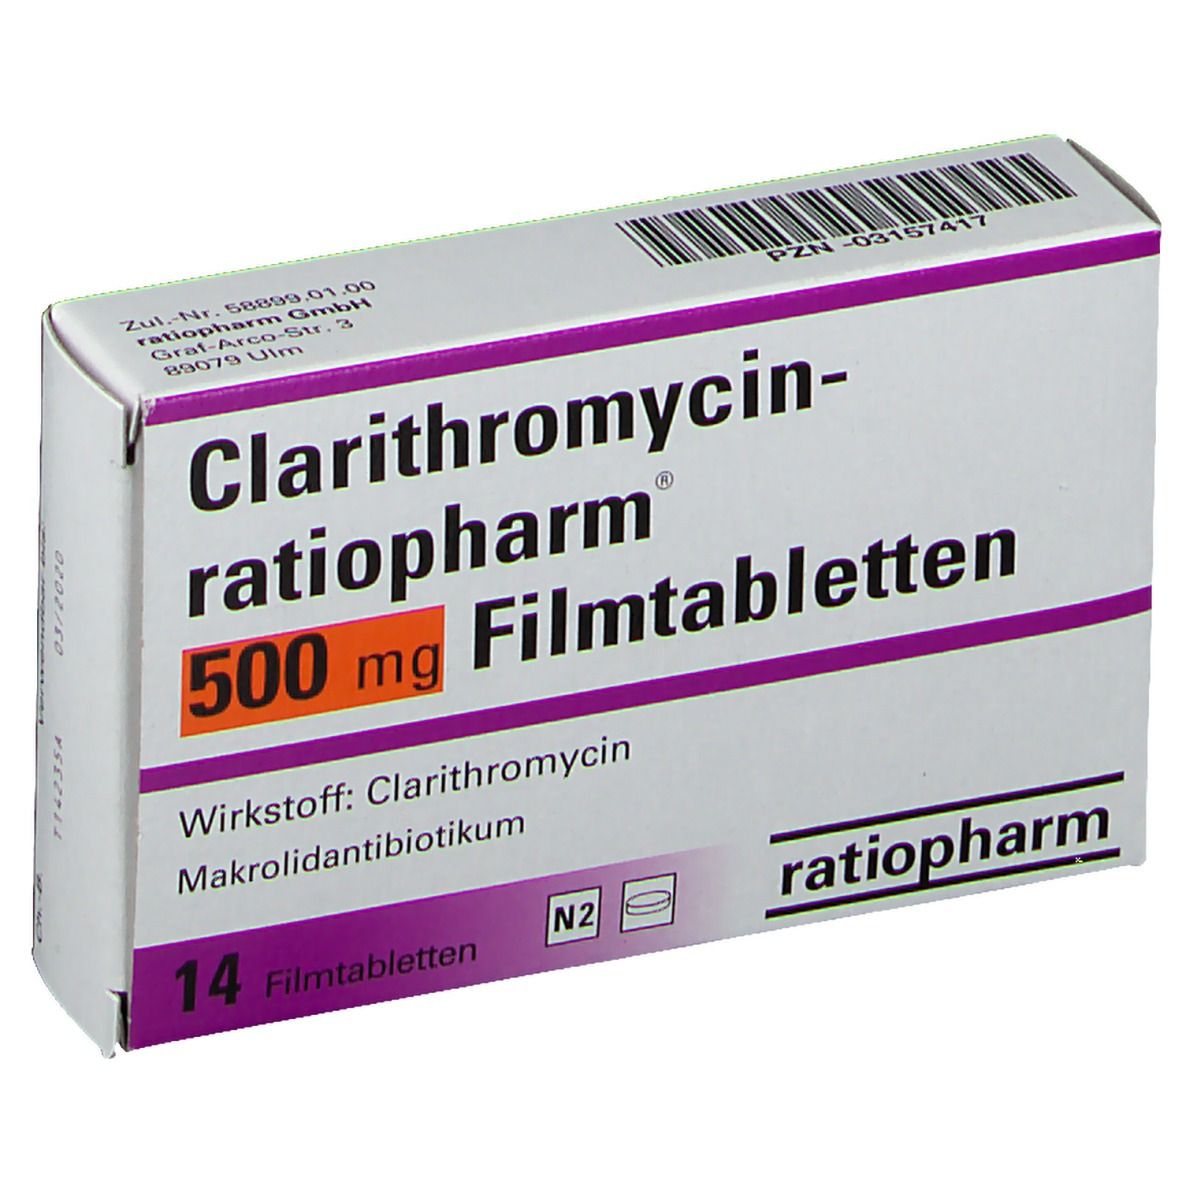 CLARITHROMYCIN ratiopharm® 500 mg Filmtabletten